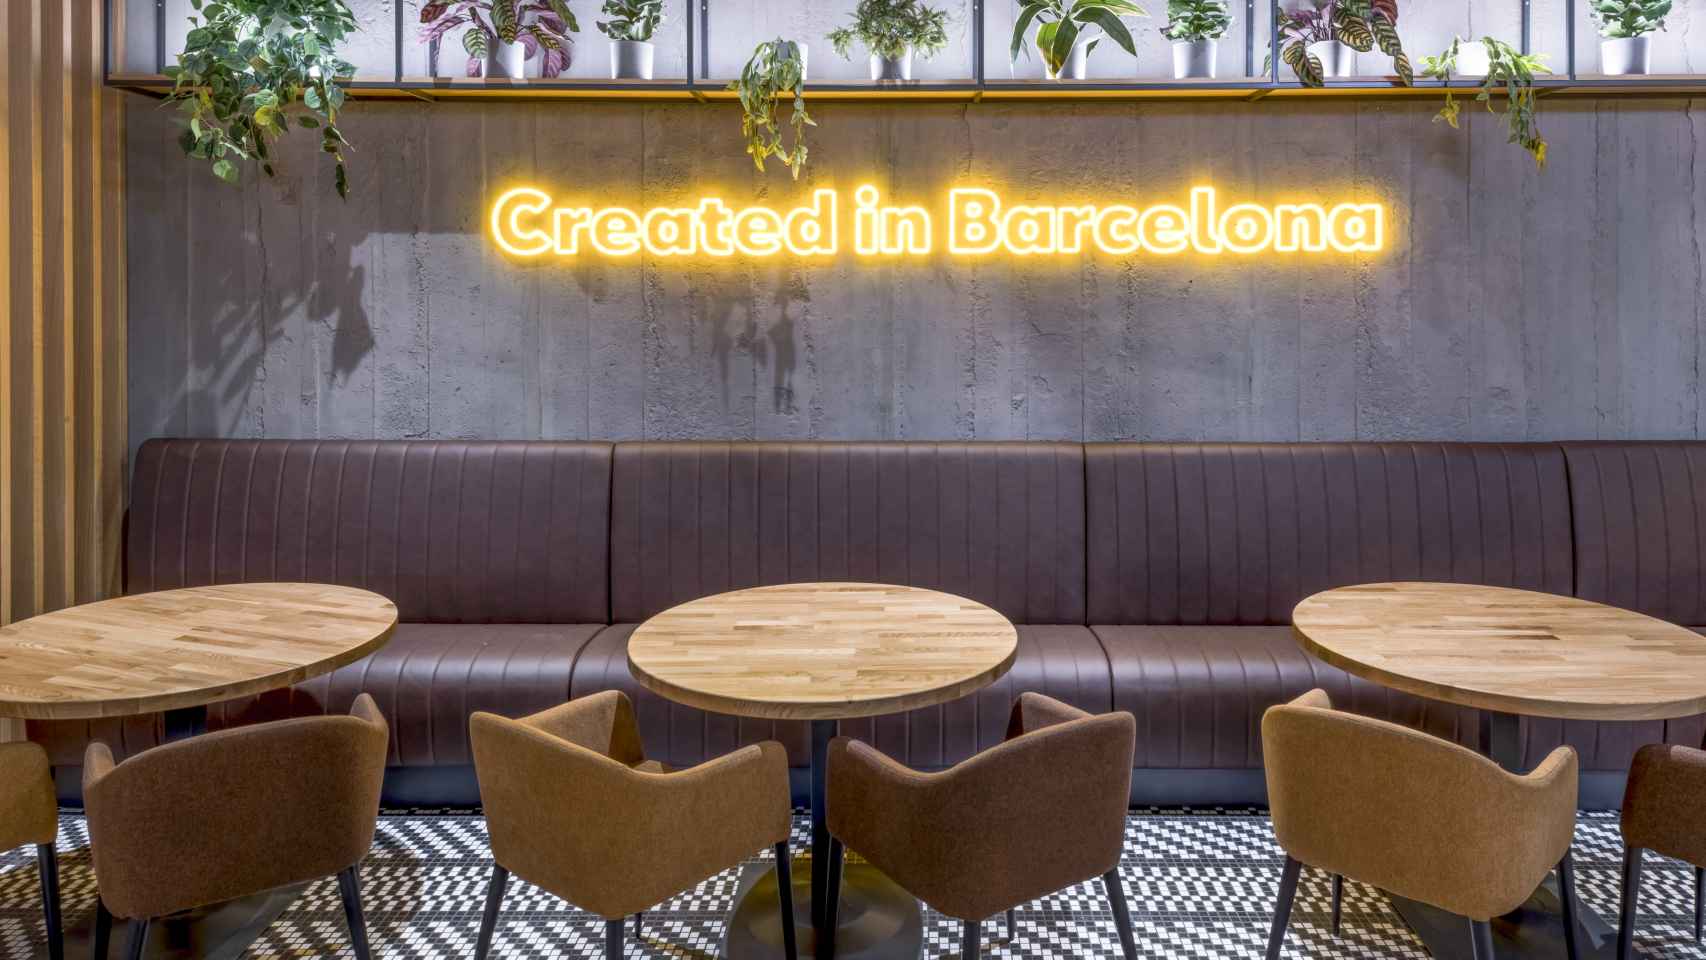 El nombre de la ciudad de Barcelona siempre está presente.